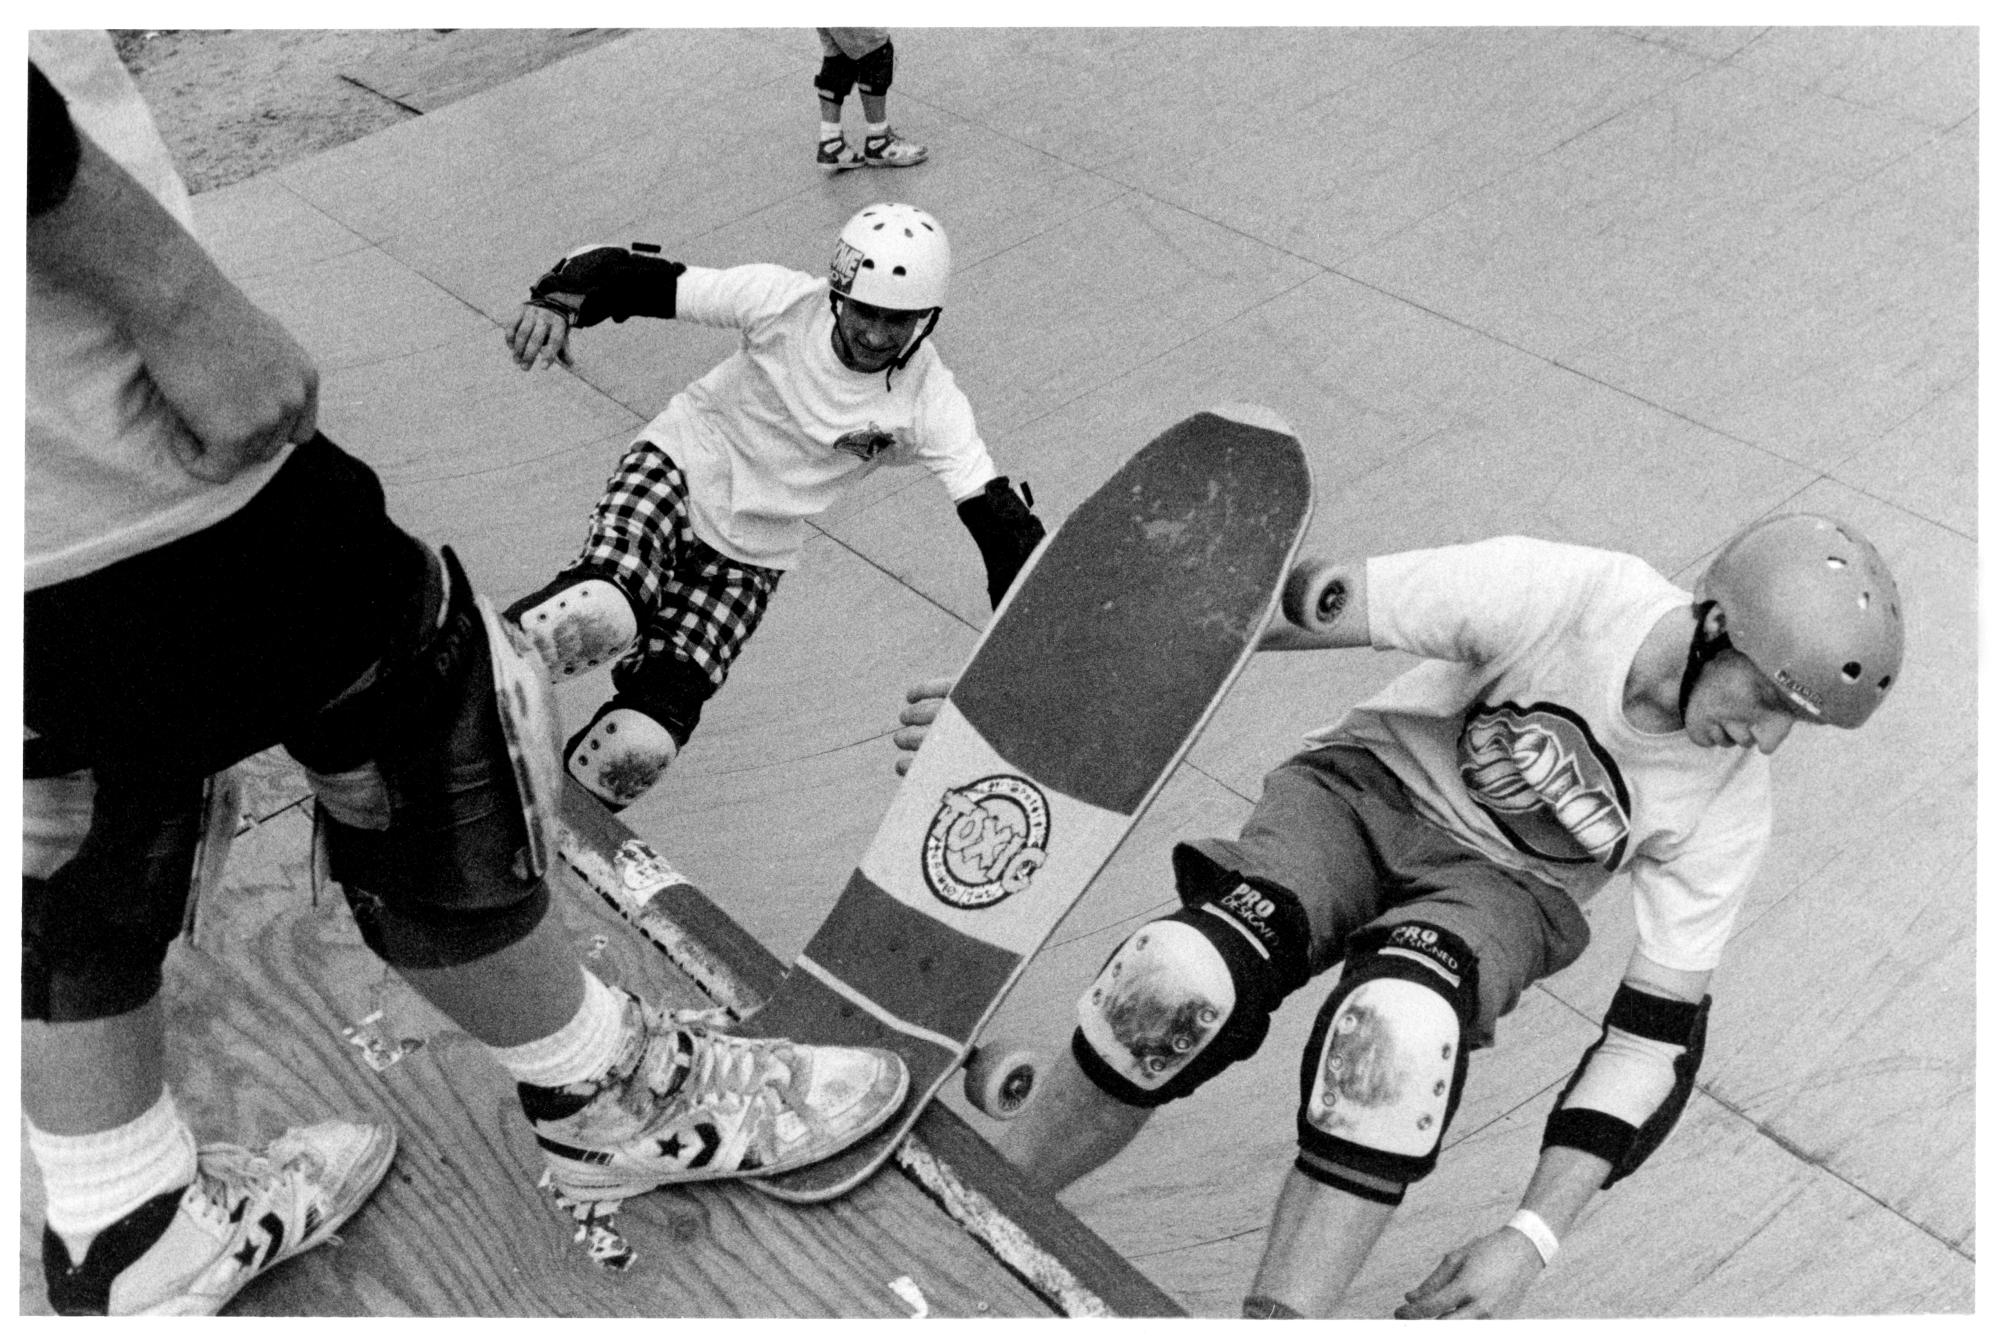 Skate Park (1989) - Skateboarding #11